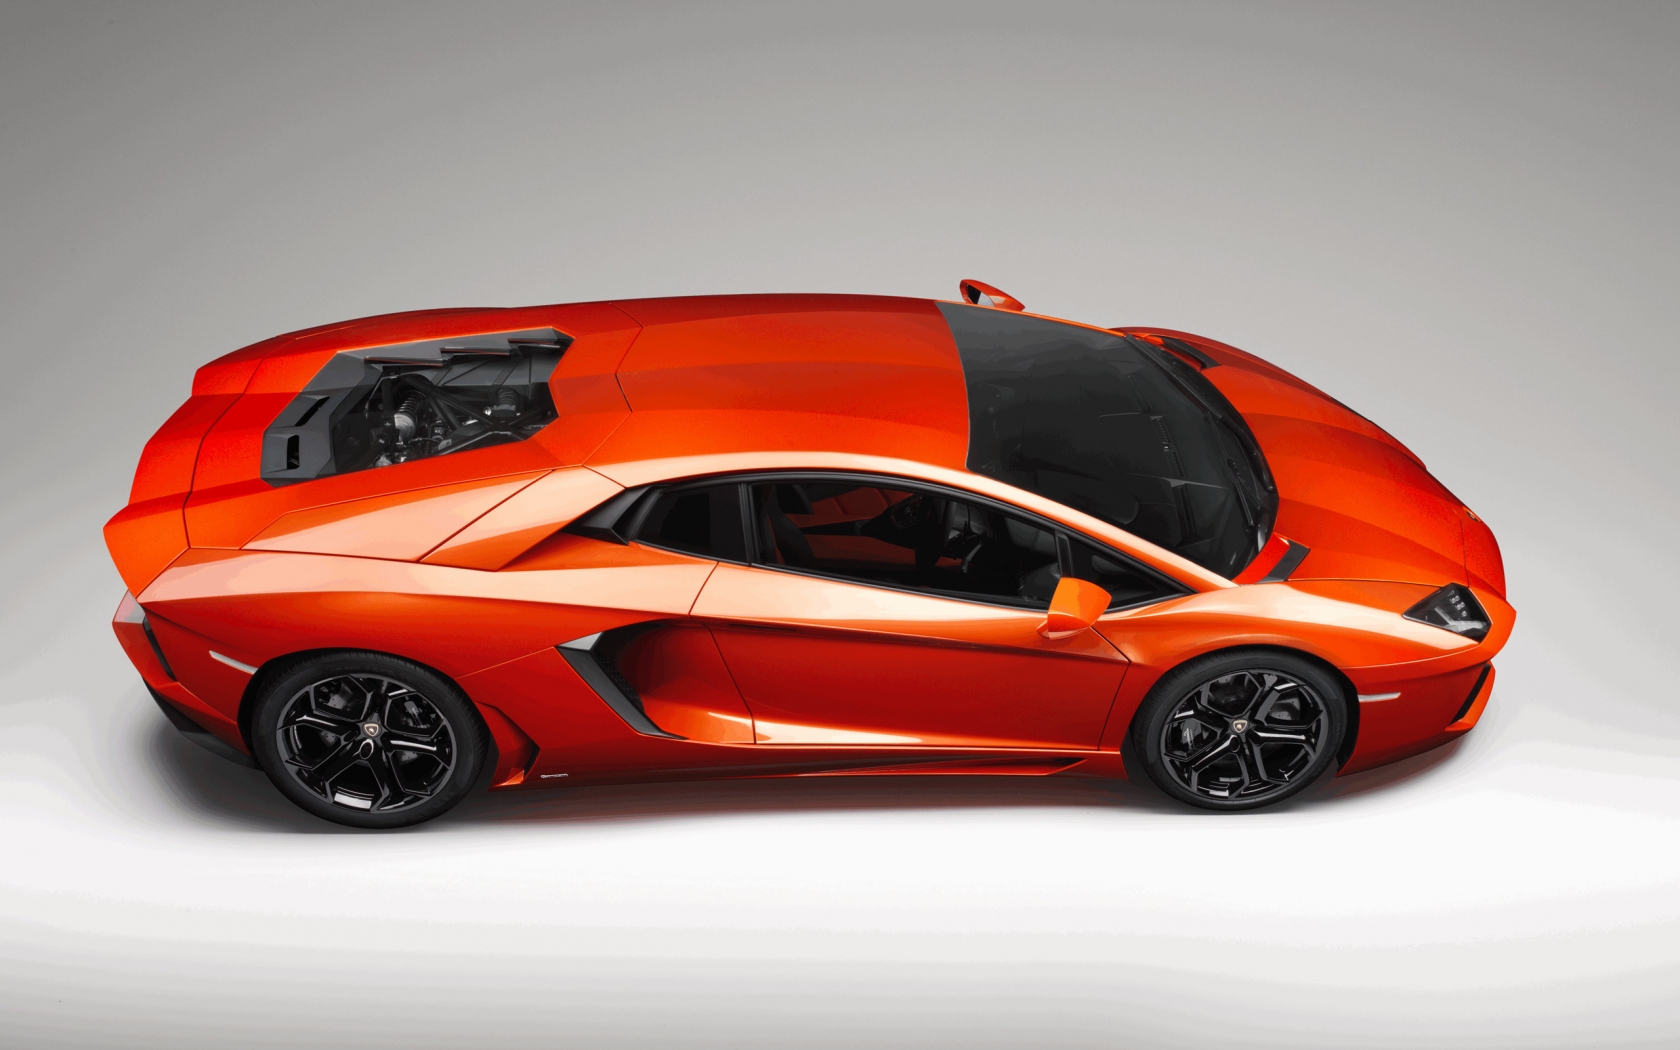 Lamborghini Aventador Studio for 1680 x 1050 widescreen resolution